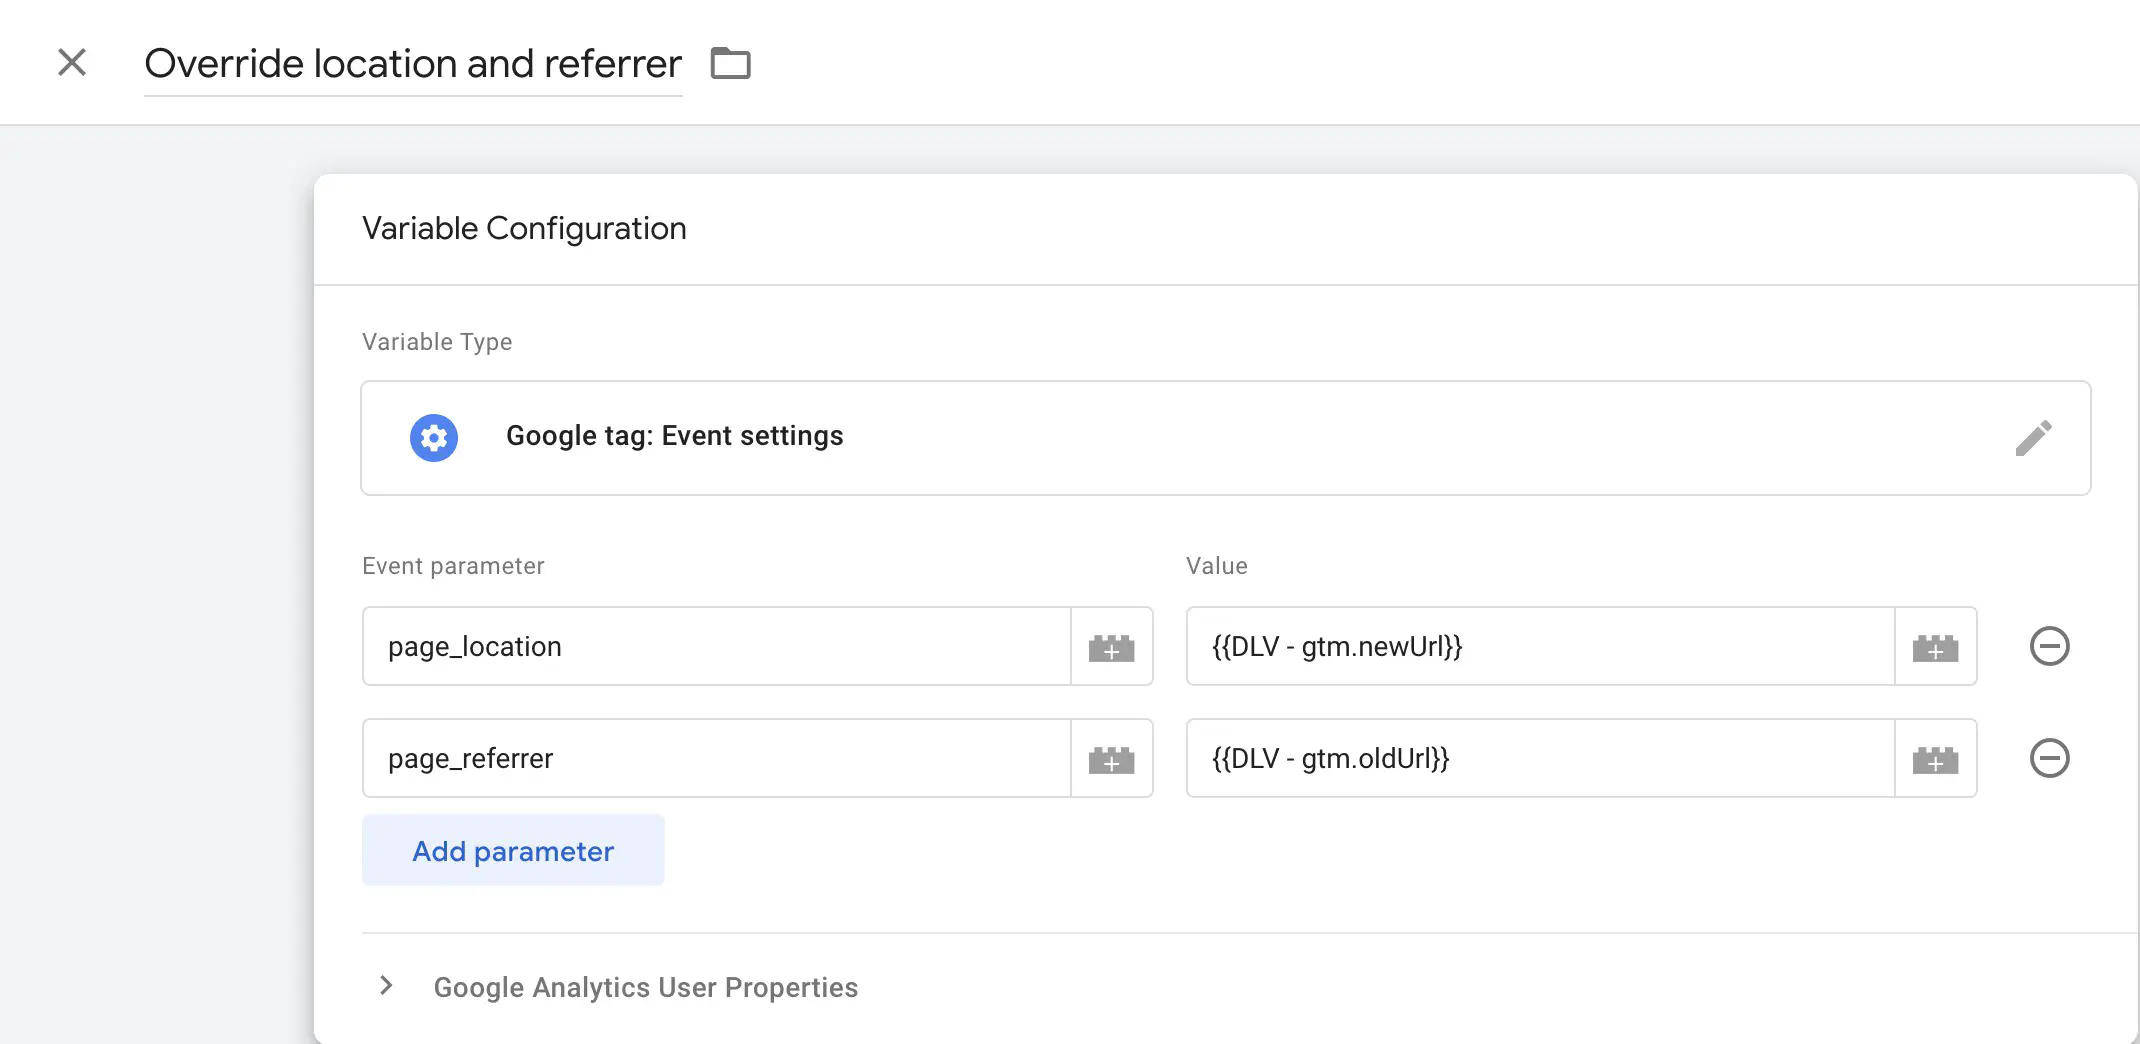 Utilisation de la variable Google tag: Event settings pour renseigner les paramètres page_location et page_referrer.